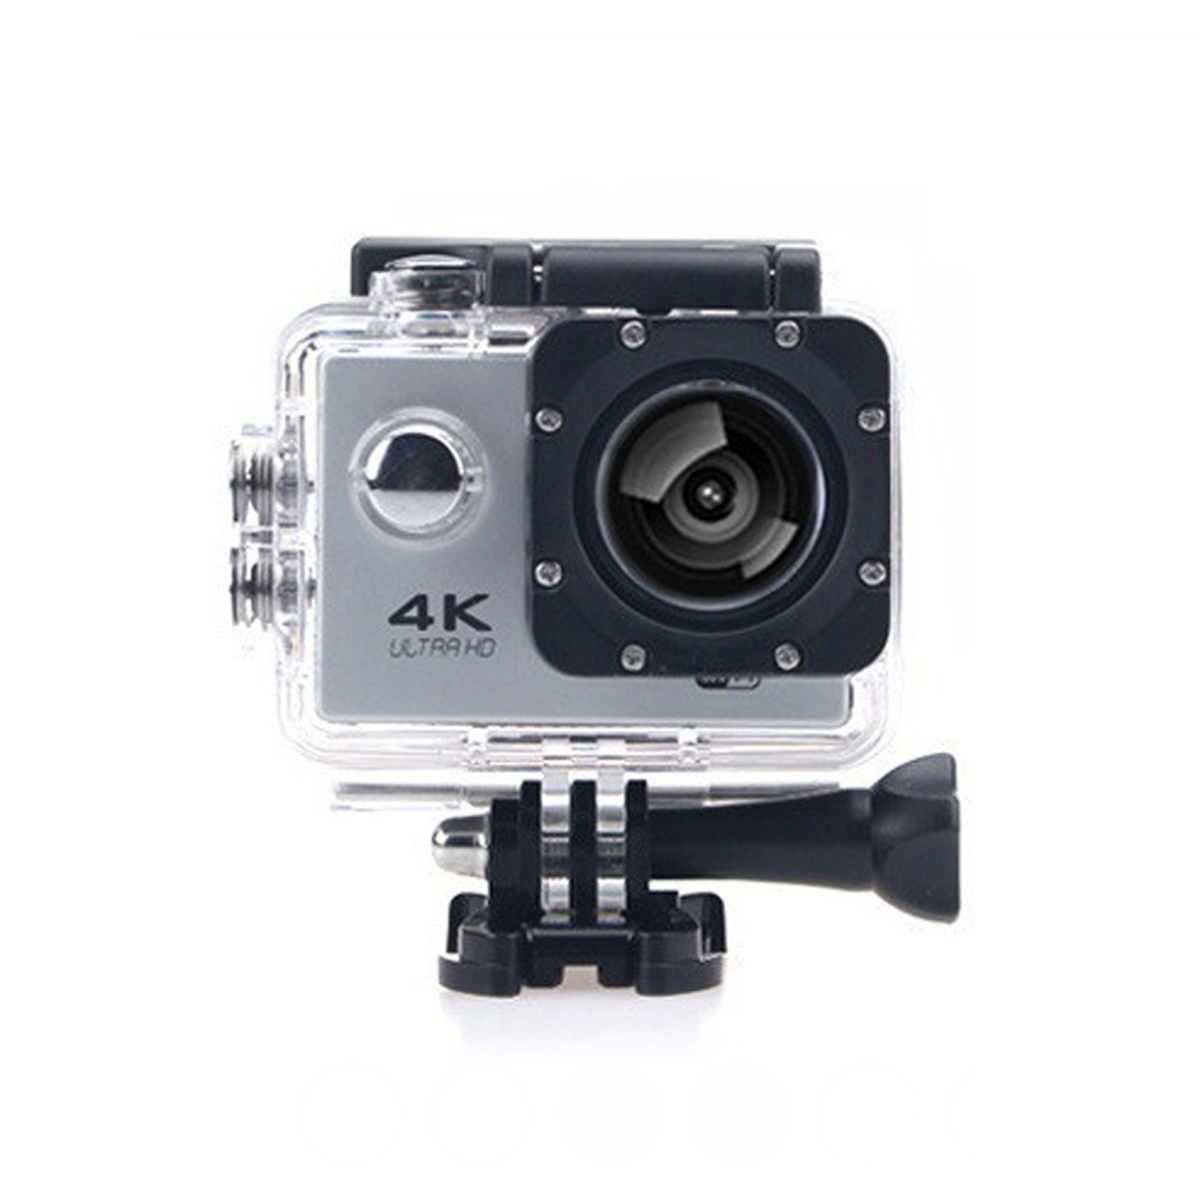 wasserdicht,HD-Kameras,Unterwasserkameras Action-Kamera KINSI 4K-Sportkameras,WiFi-Synchronisation,30m